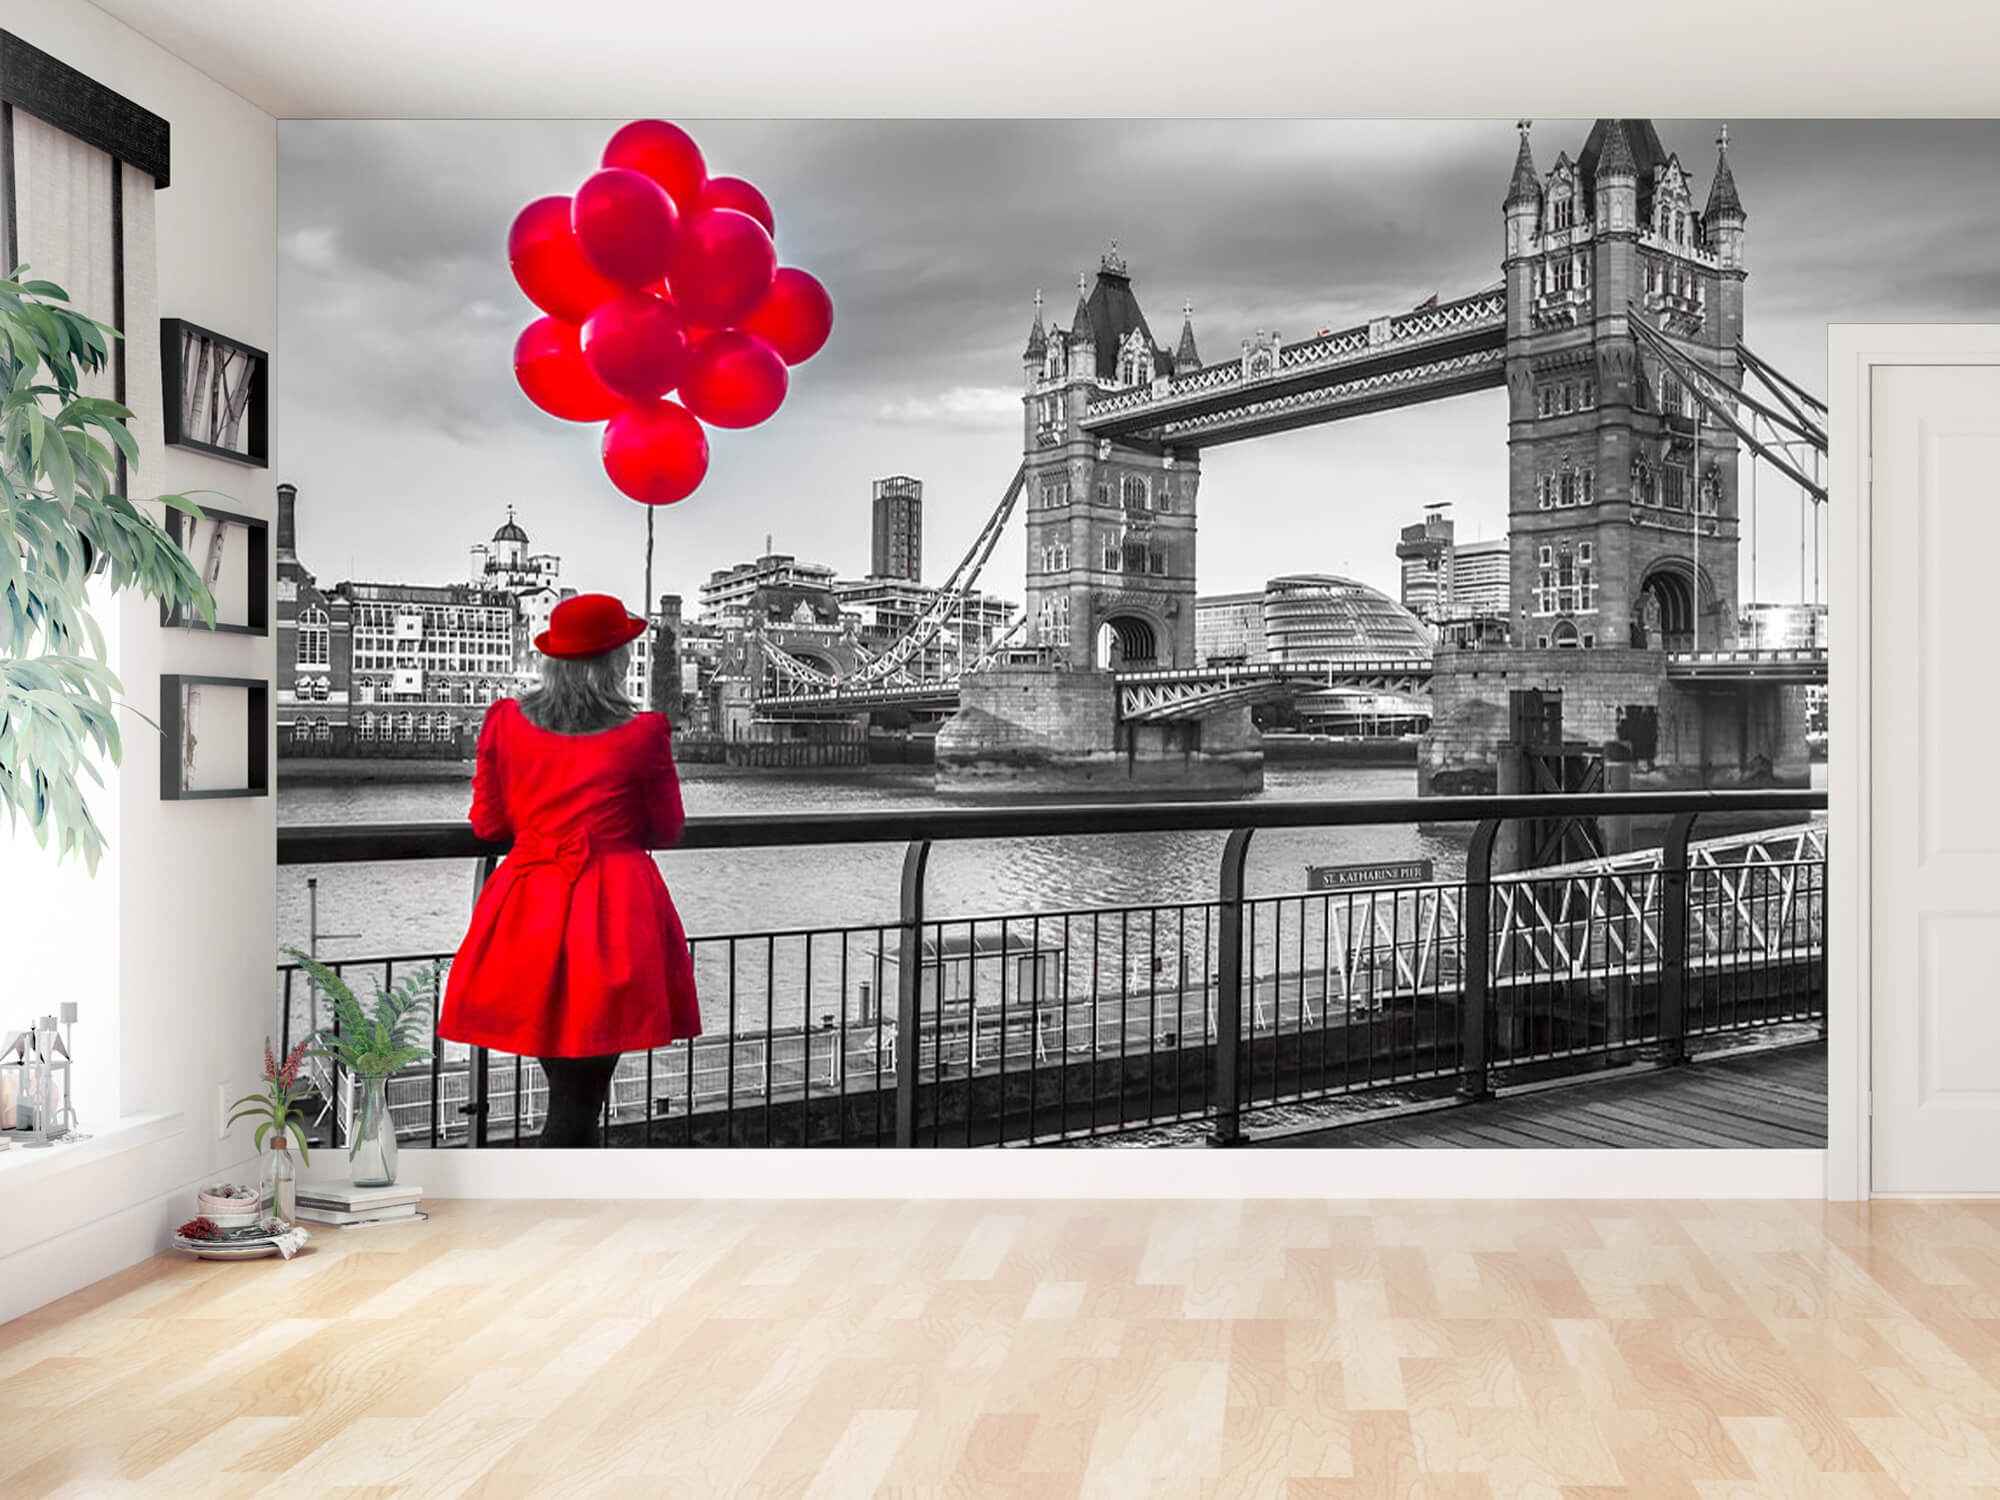  Papel pintado con Mujer en el Tower Bridge - Salón 2